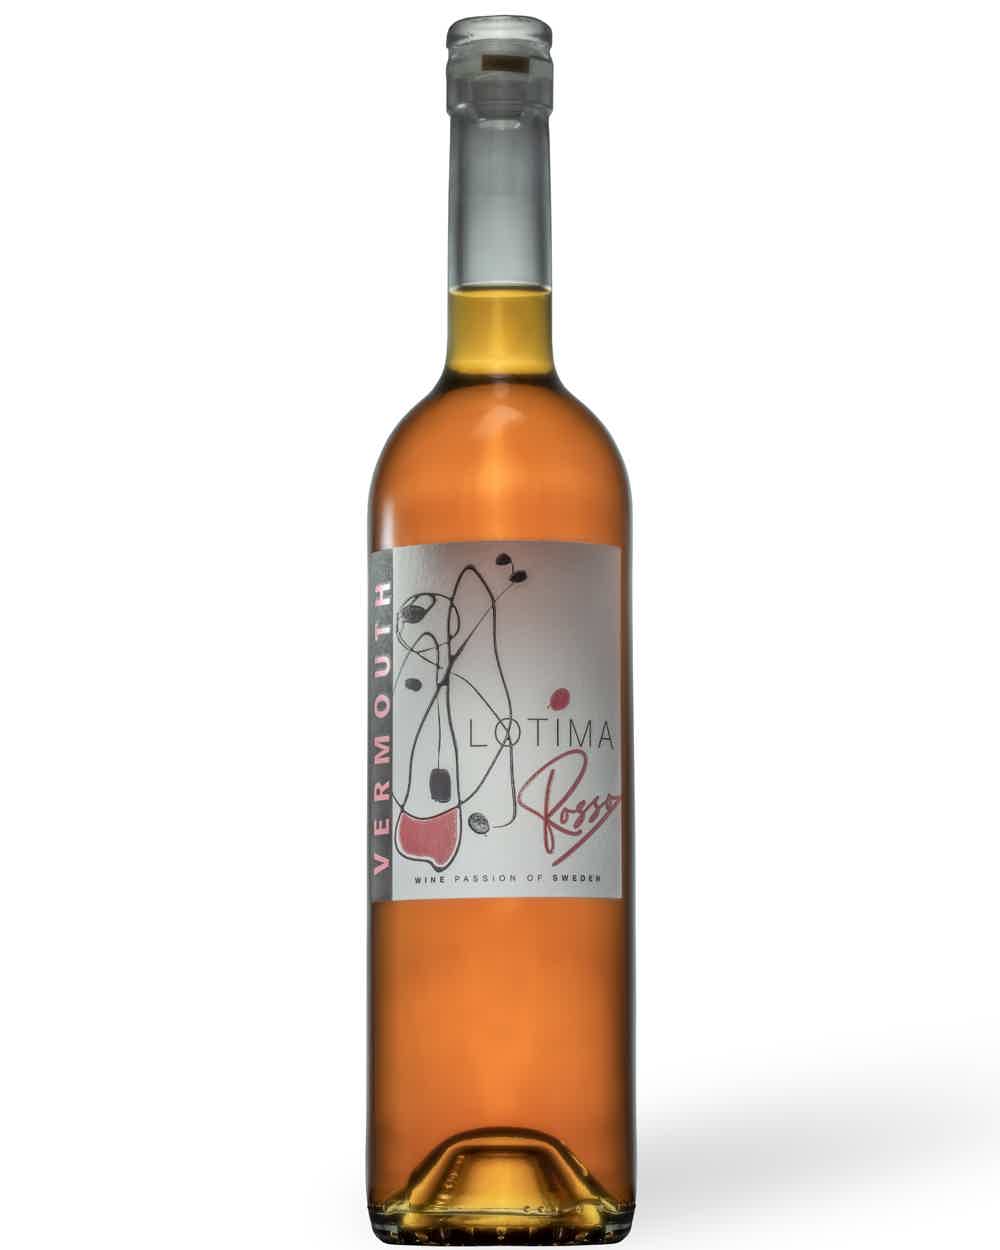 Lotima Vermouth Rosso 16.0% 0.75L, Wine